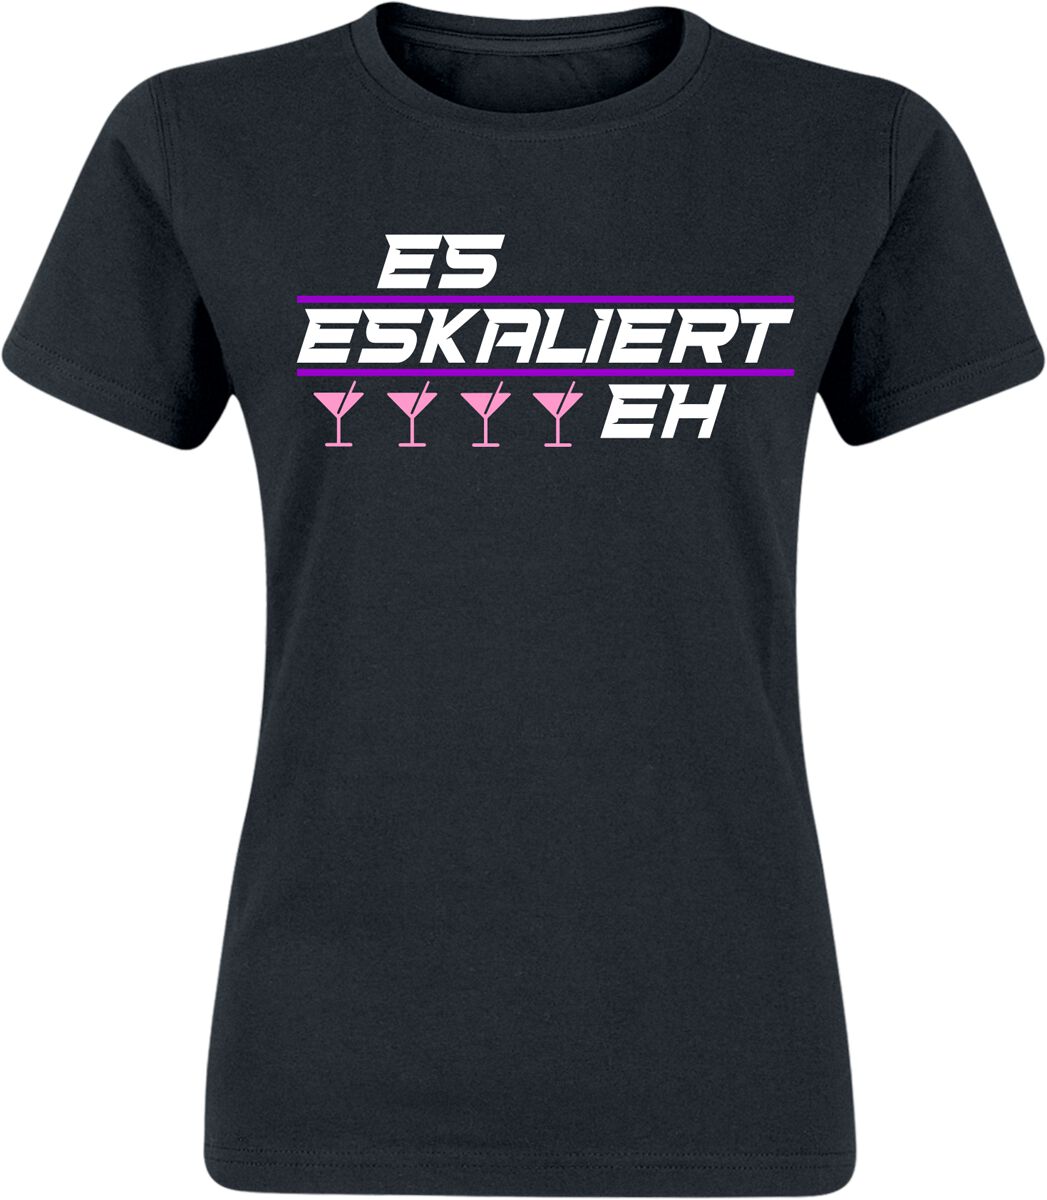 Alkohol & Party T-Shirt - Es eskaliert eh! - S bis XXL - für Damen - Größe XXL - schwarz